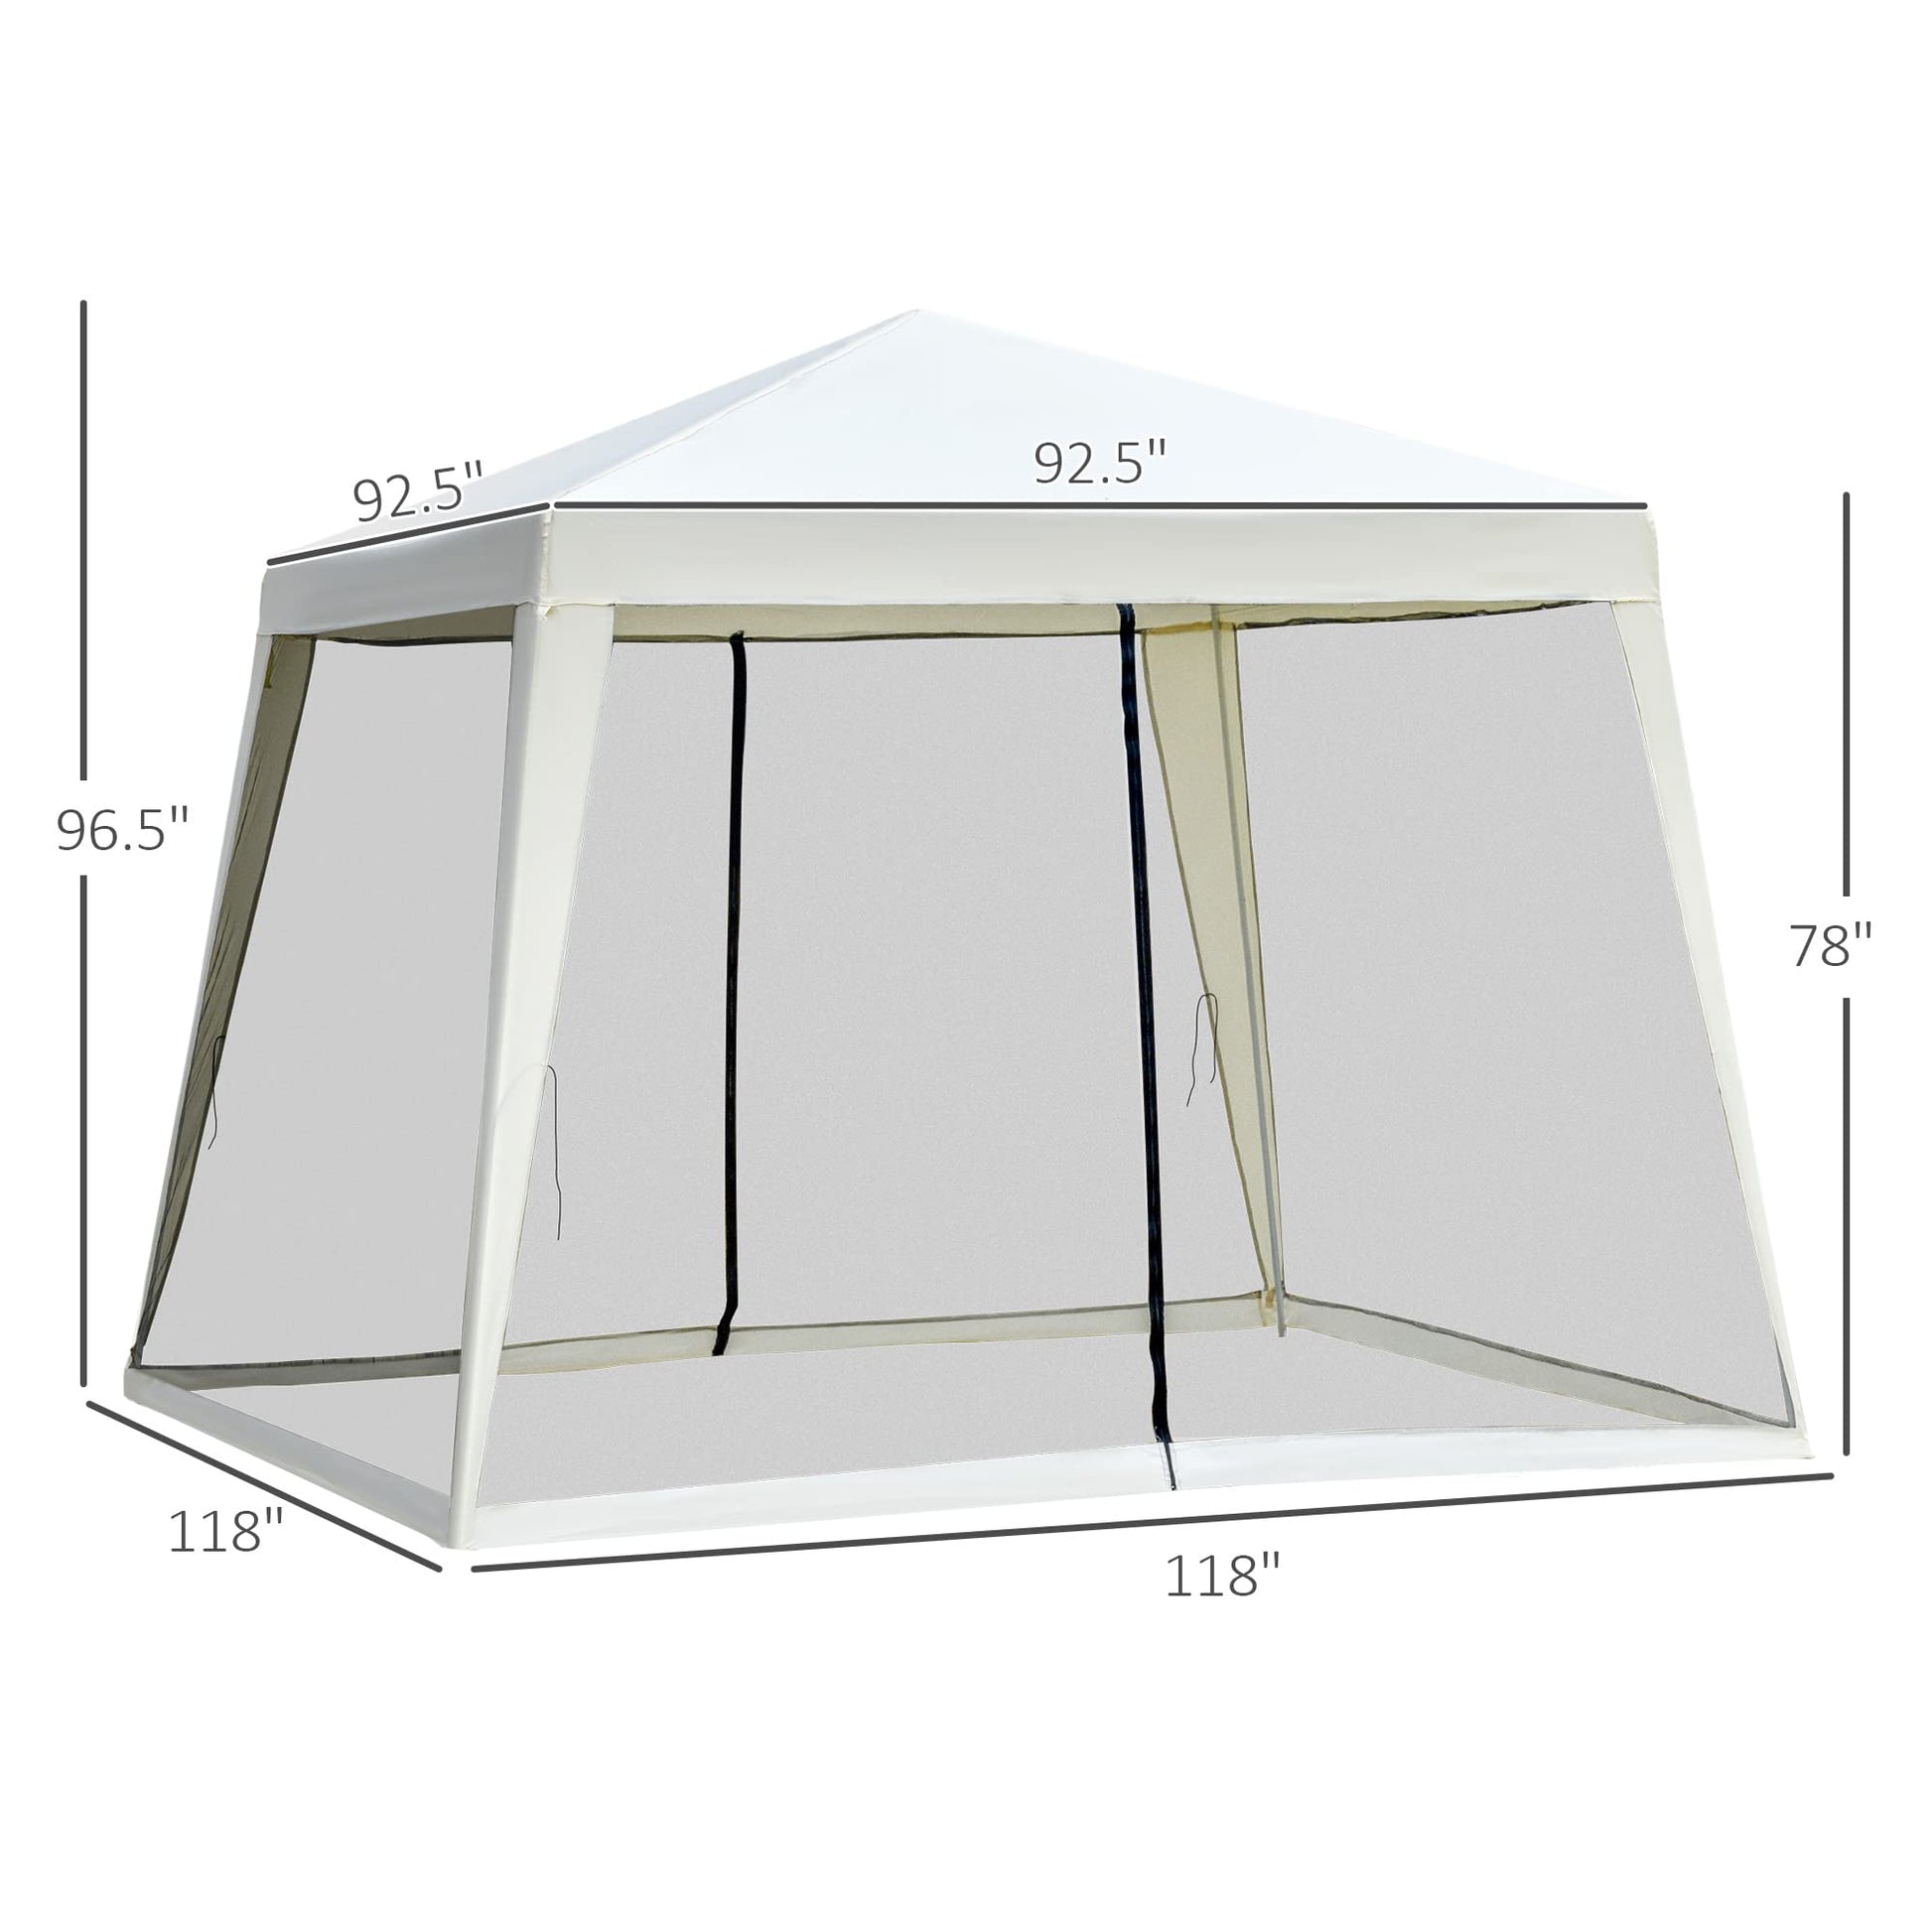 10x10ft Gazebo Tent. Phil and Gazelle.